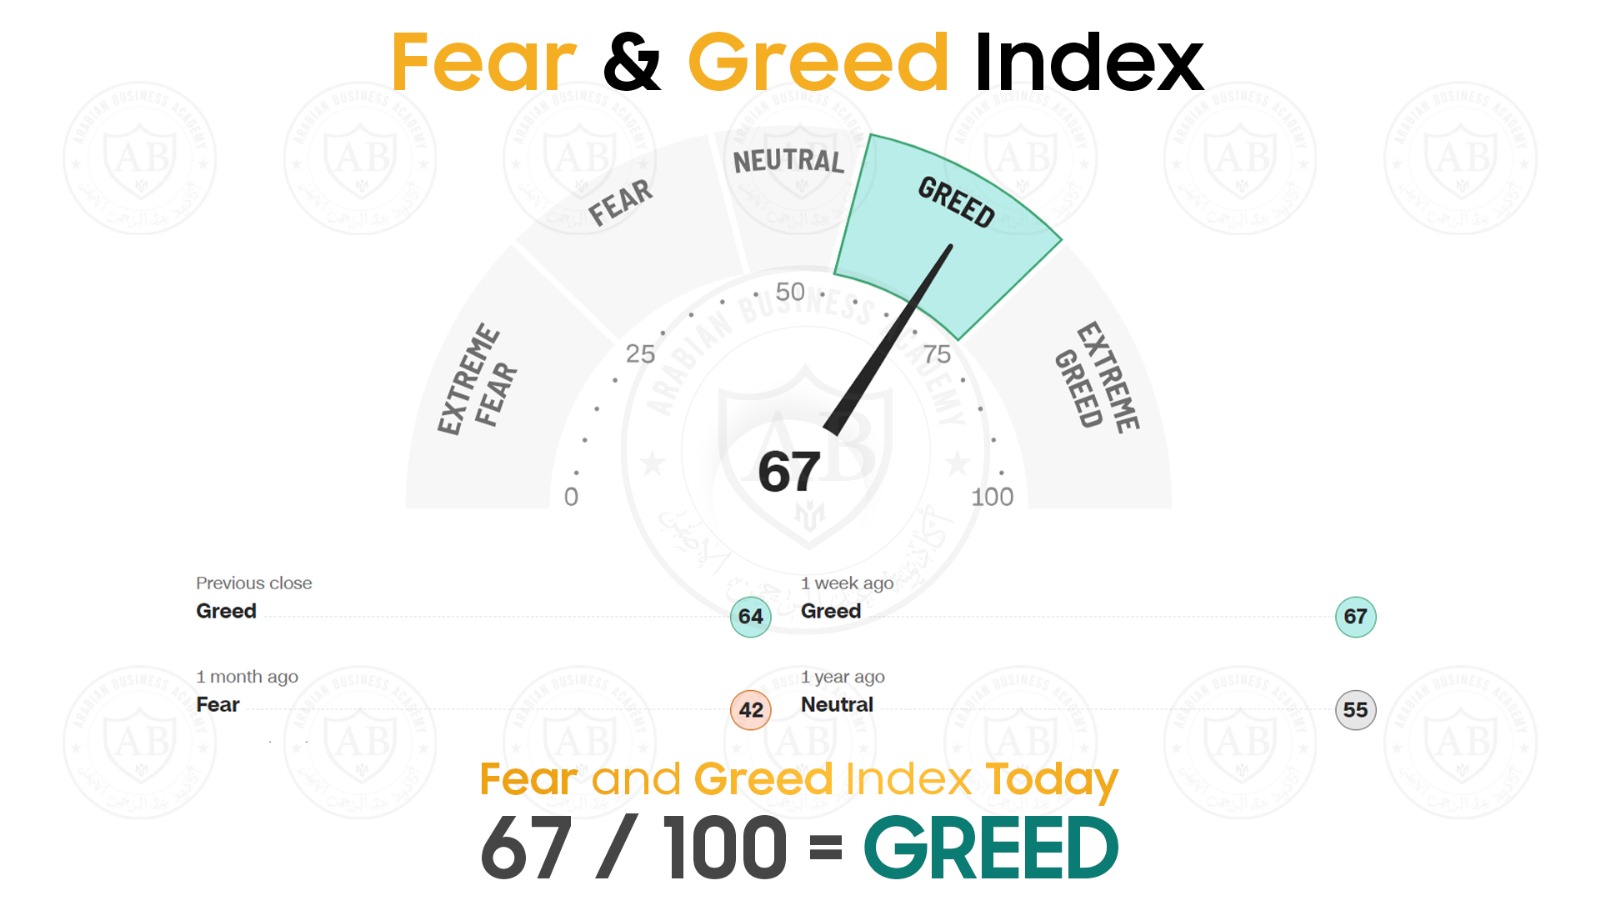 مؤشر  Fear and Greed  في أسواق الاسهم يشير  اليوم الى 67/100